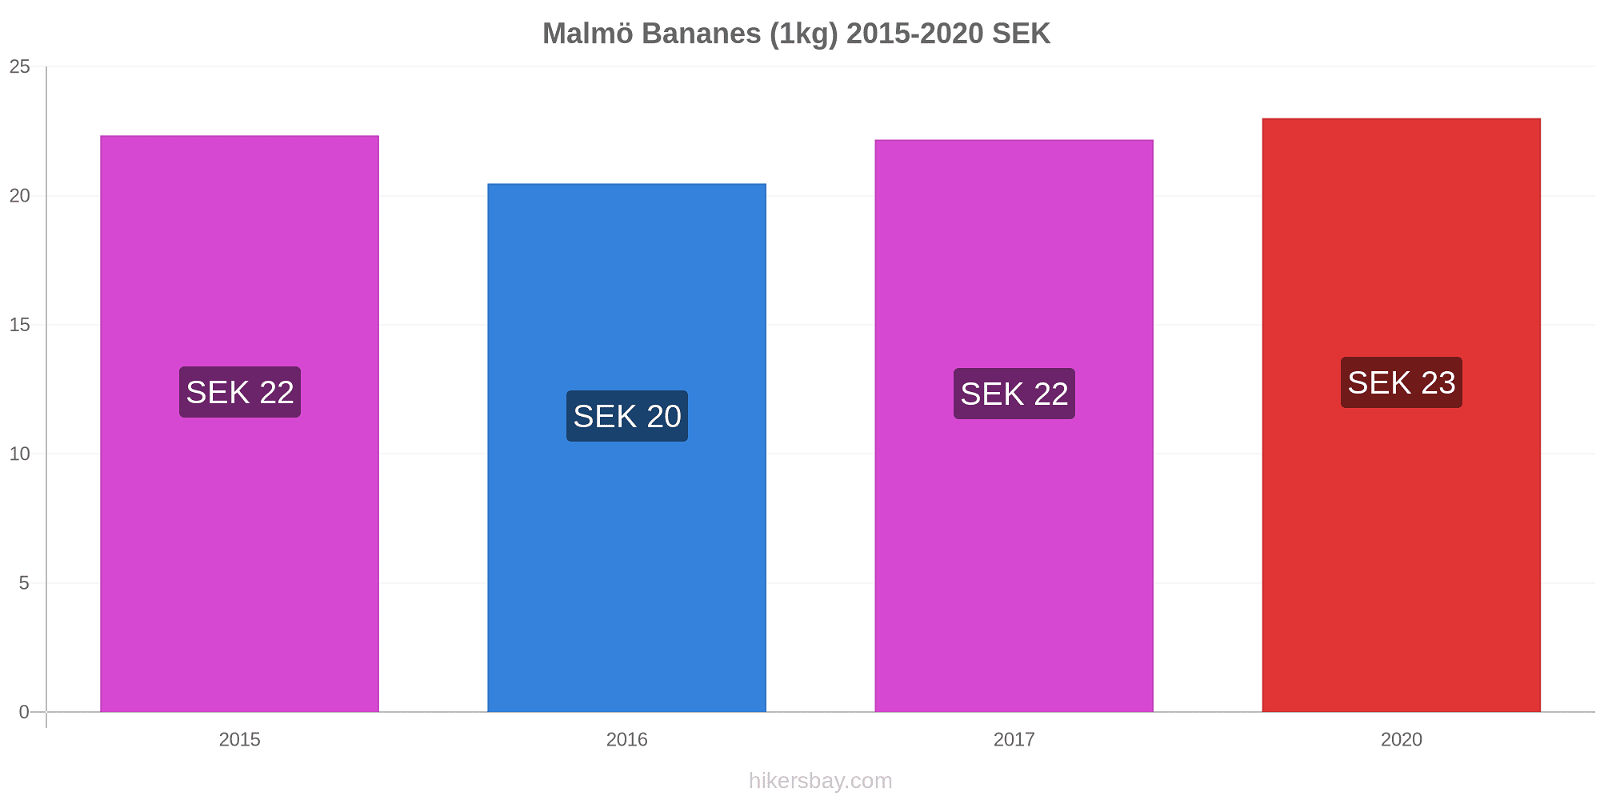 Malmö changements de prix Bananes (1kg) hikersbay.com